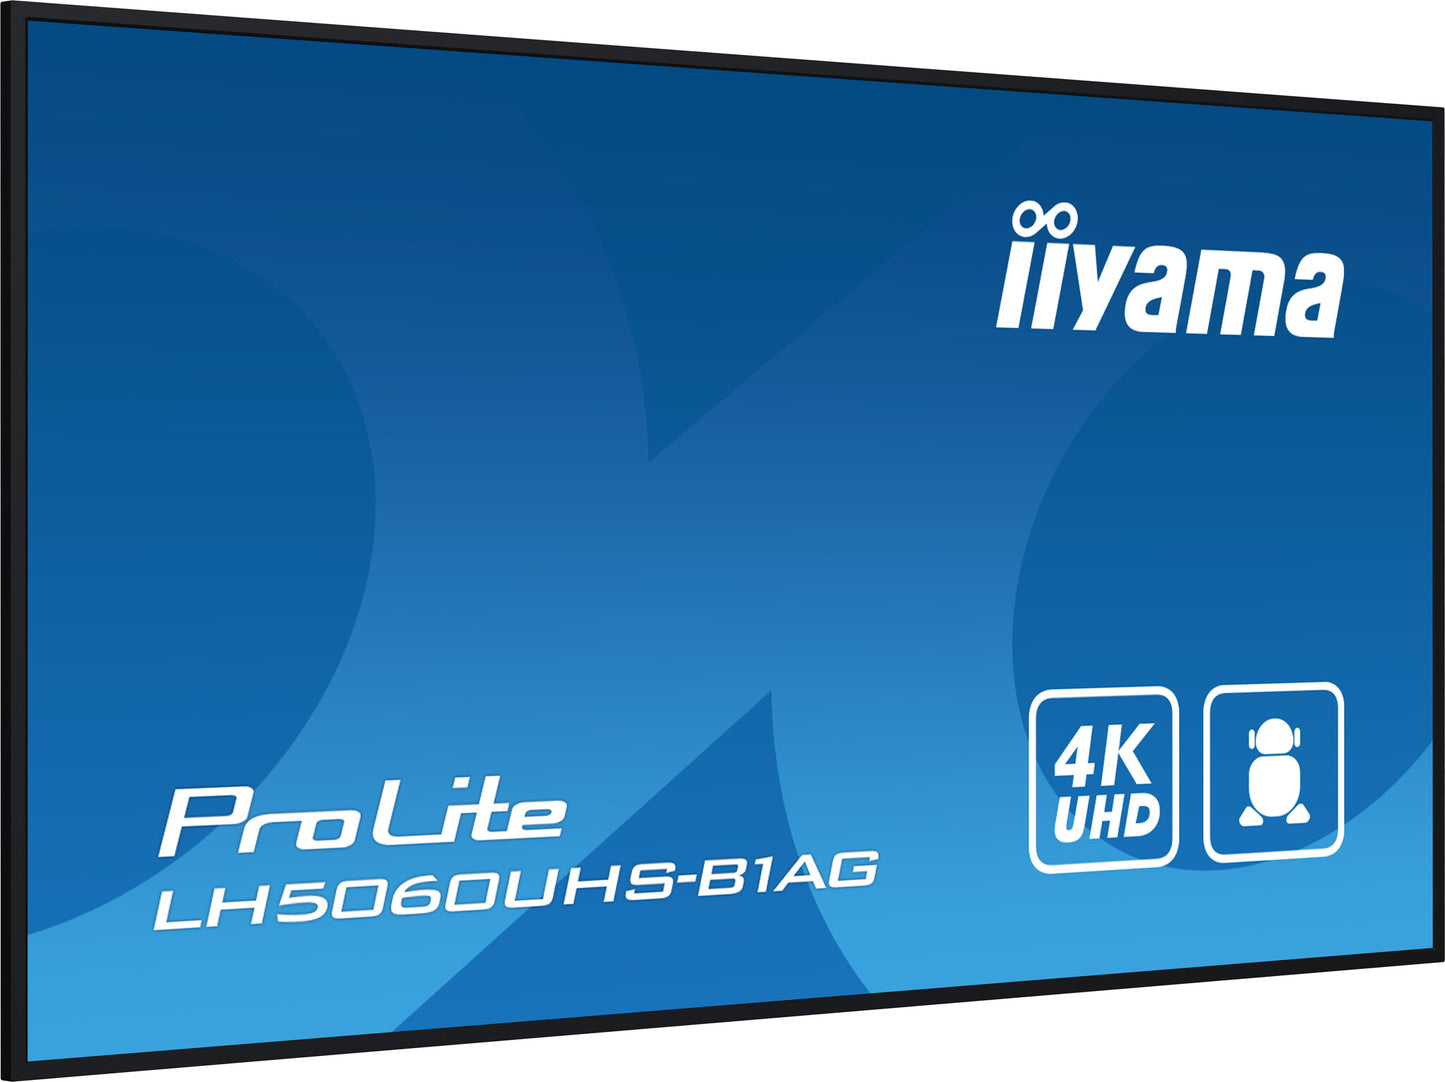 iiyama LH5060UHS-B1AG